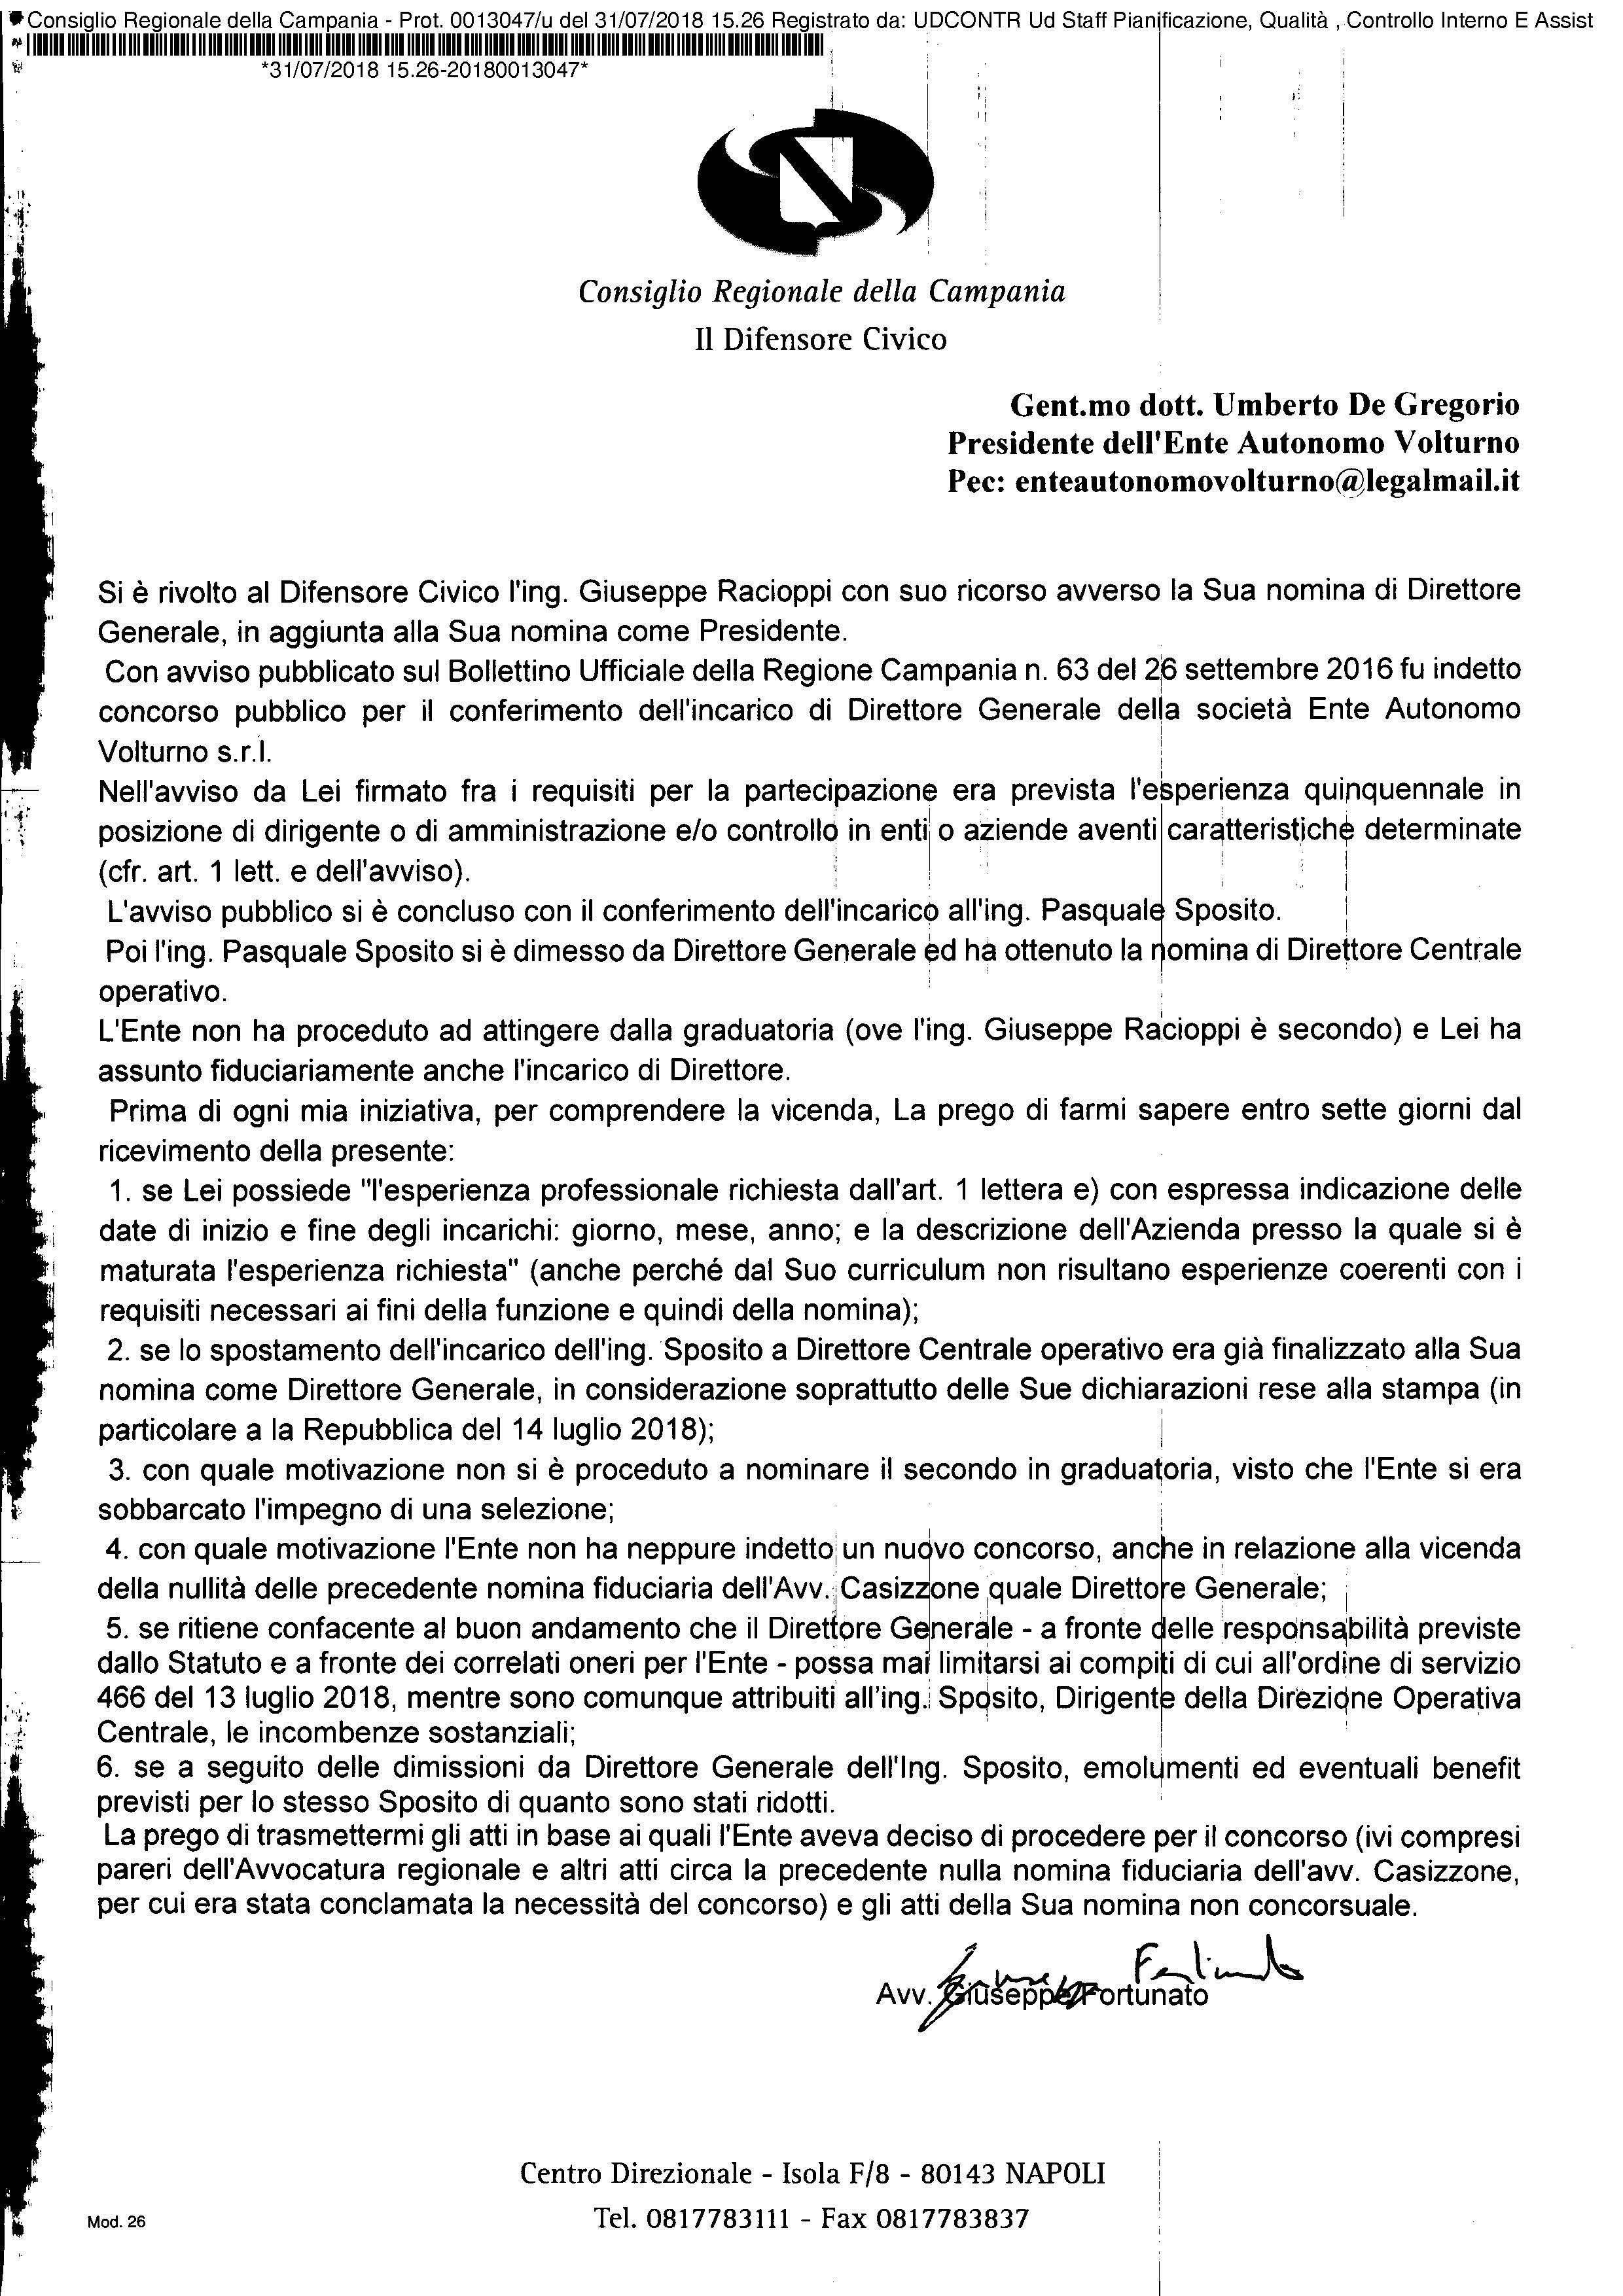 Difensore Civico Regione Campania - Ente Autonomo Volturno e il pasticcio della presidenza